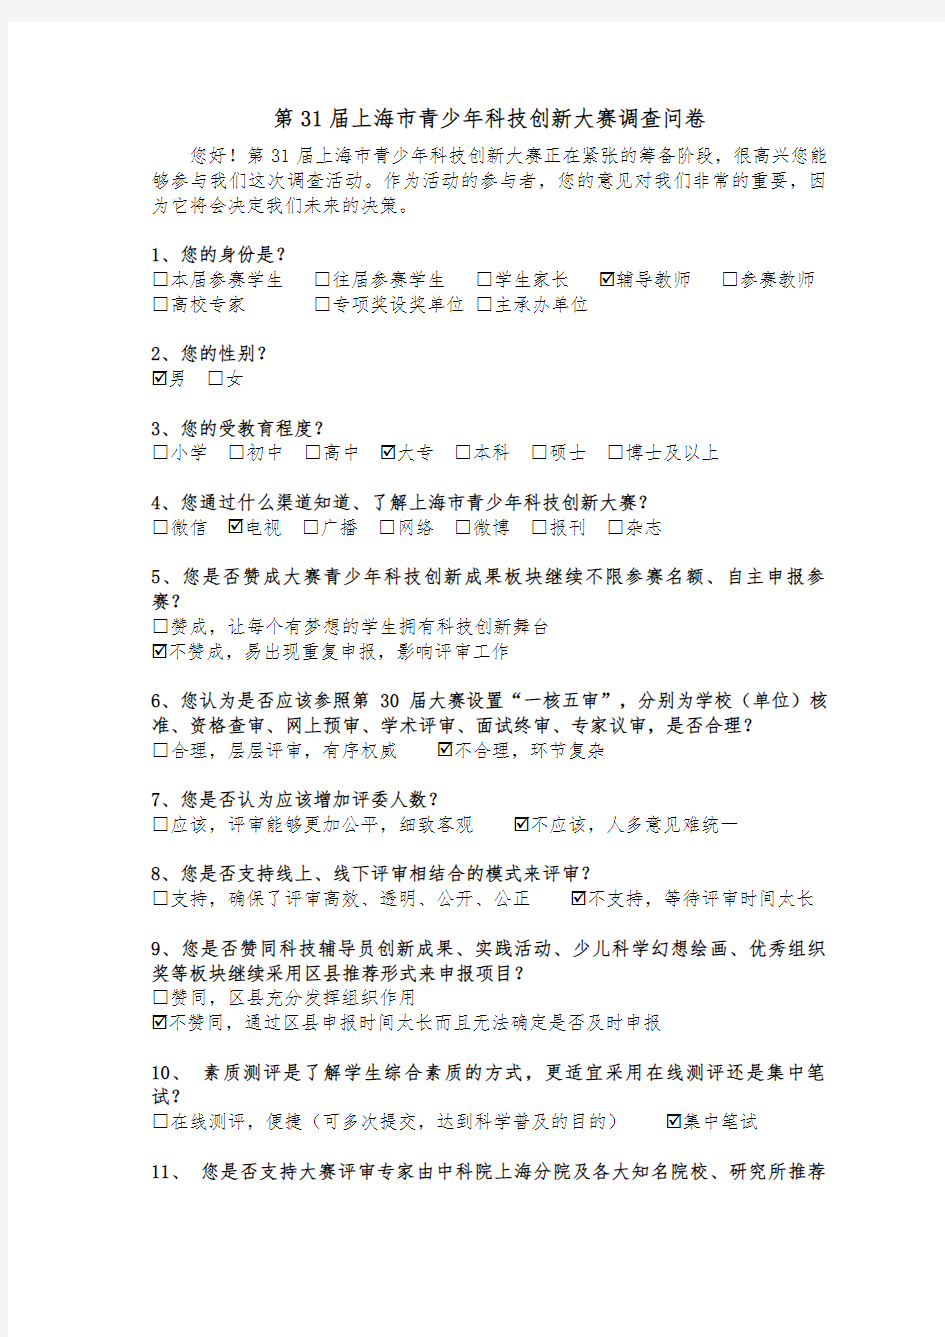 上海市青少年科技创新大赛调查问卷(DOC 40页)